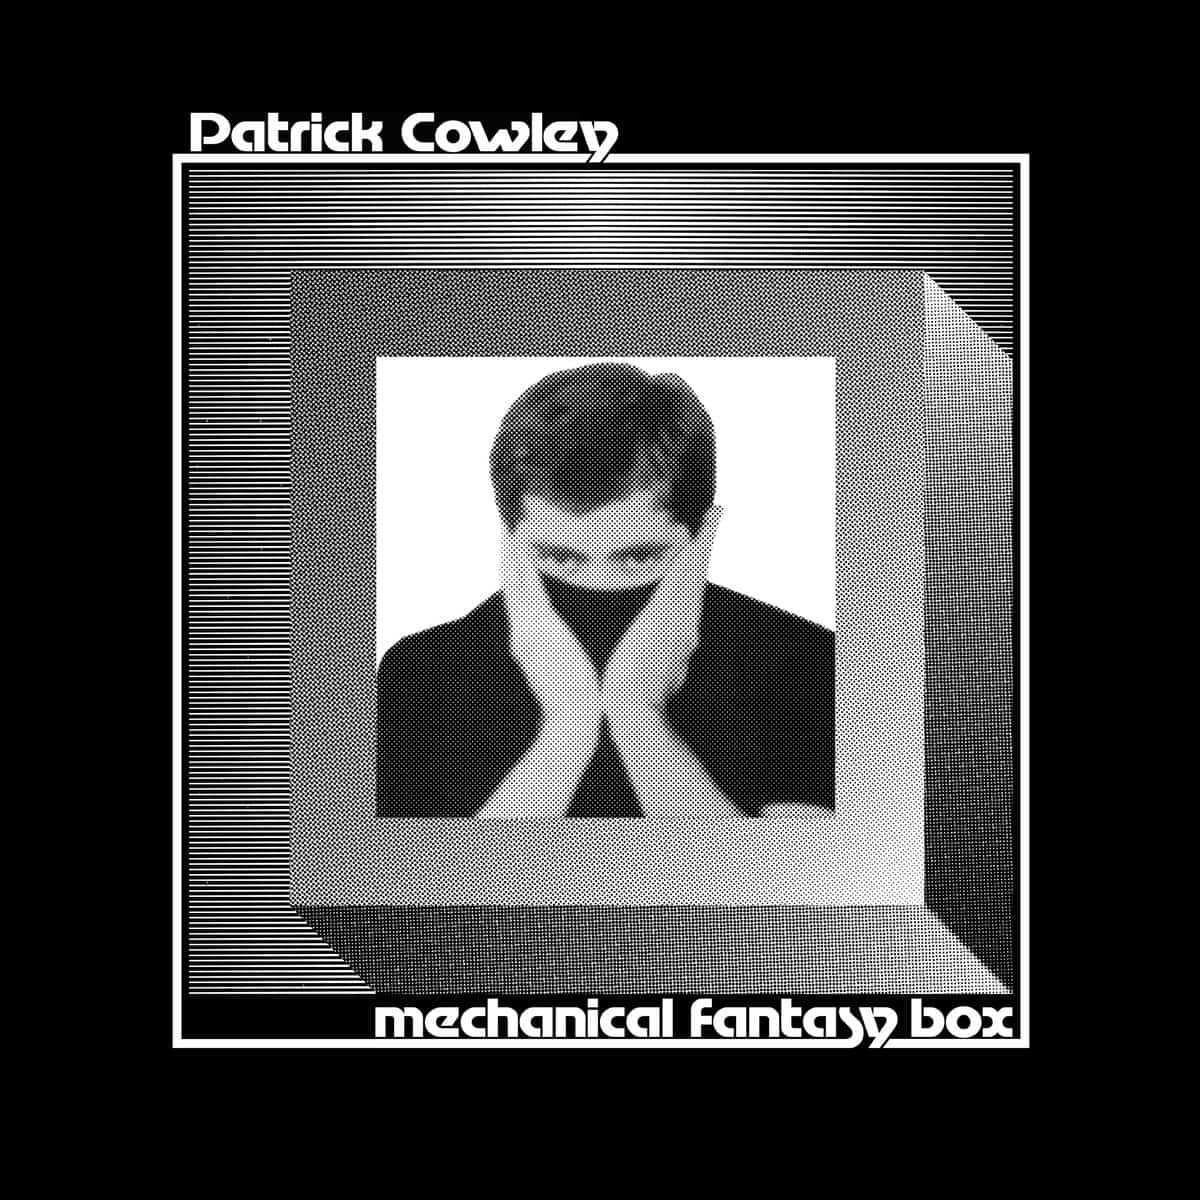 Mechanical Fantasy Box, est un disque inédit de 13 titres de Patrick Cowley, enregistrés entre 1973 et 1980.